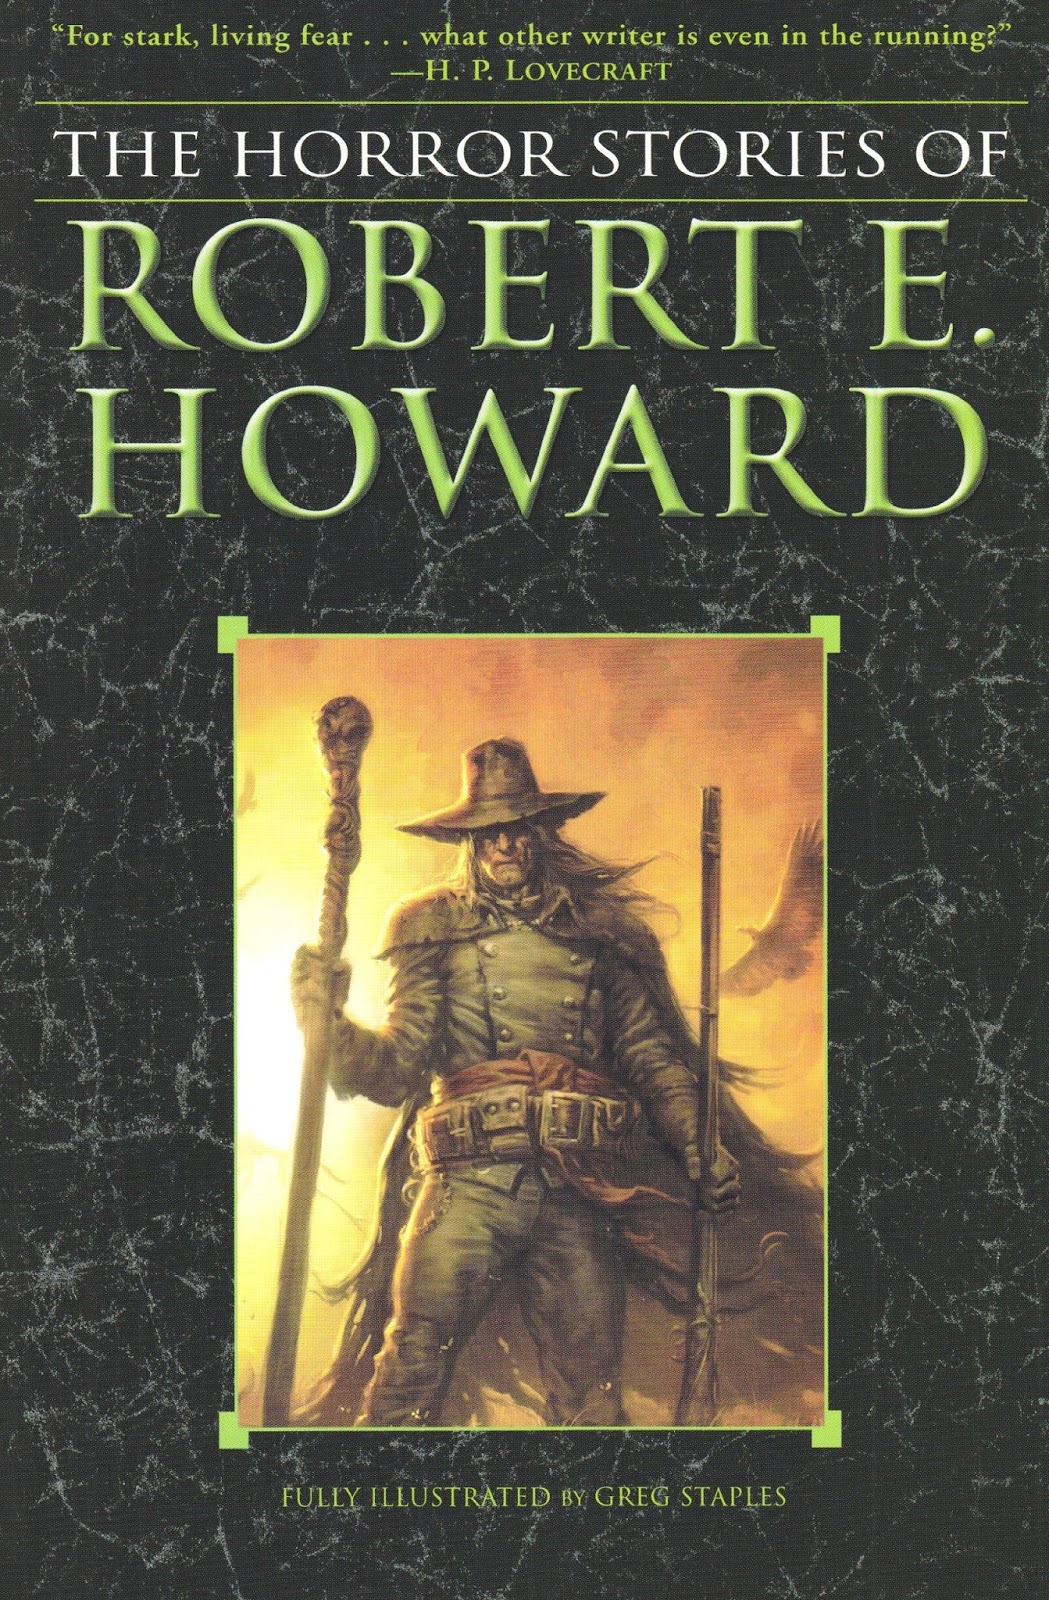 books by robert e howard